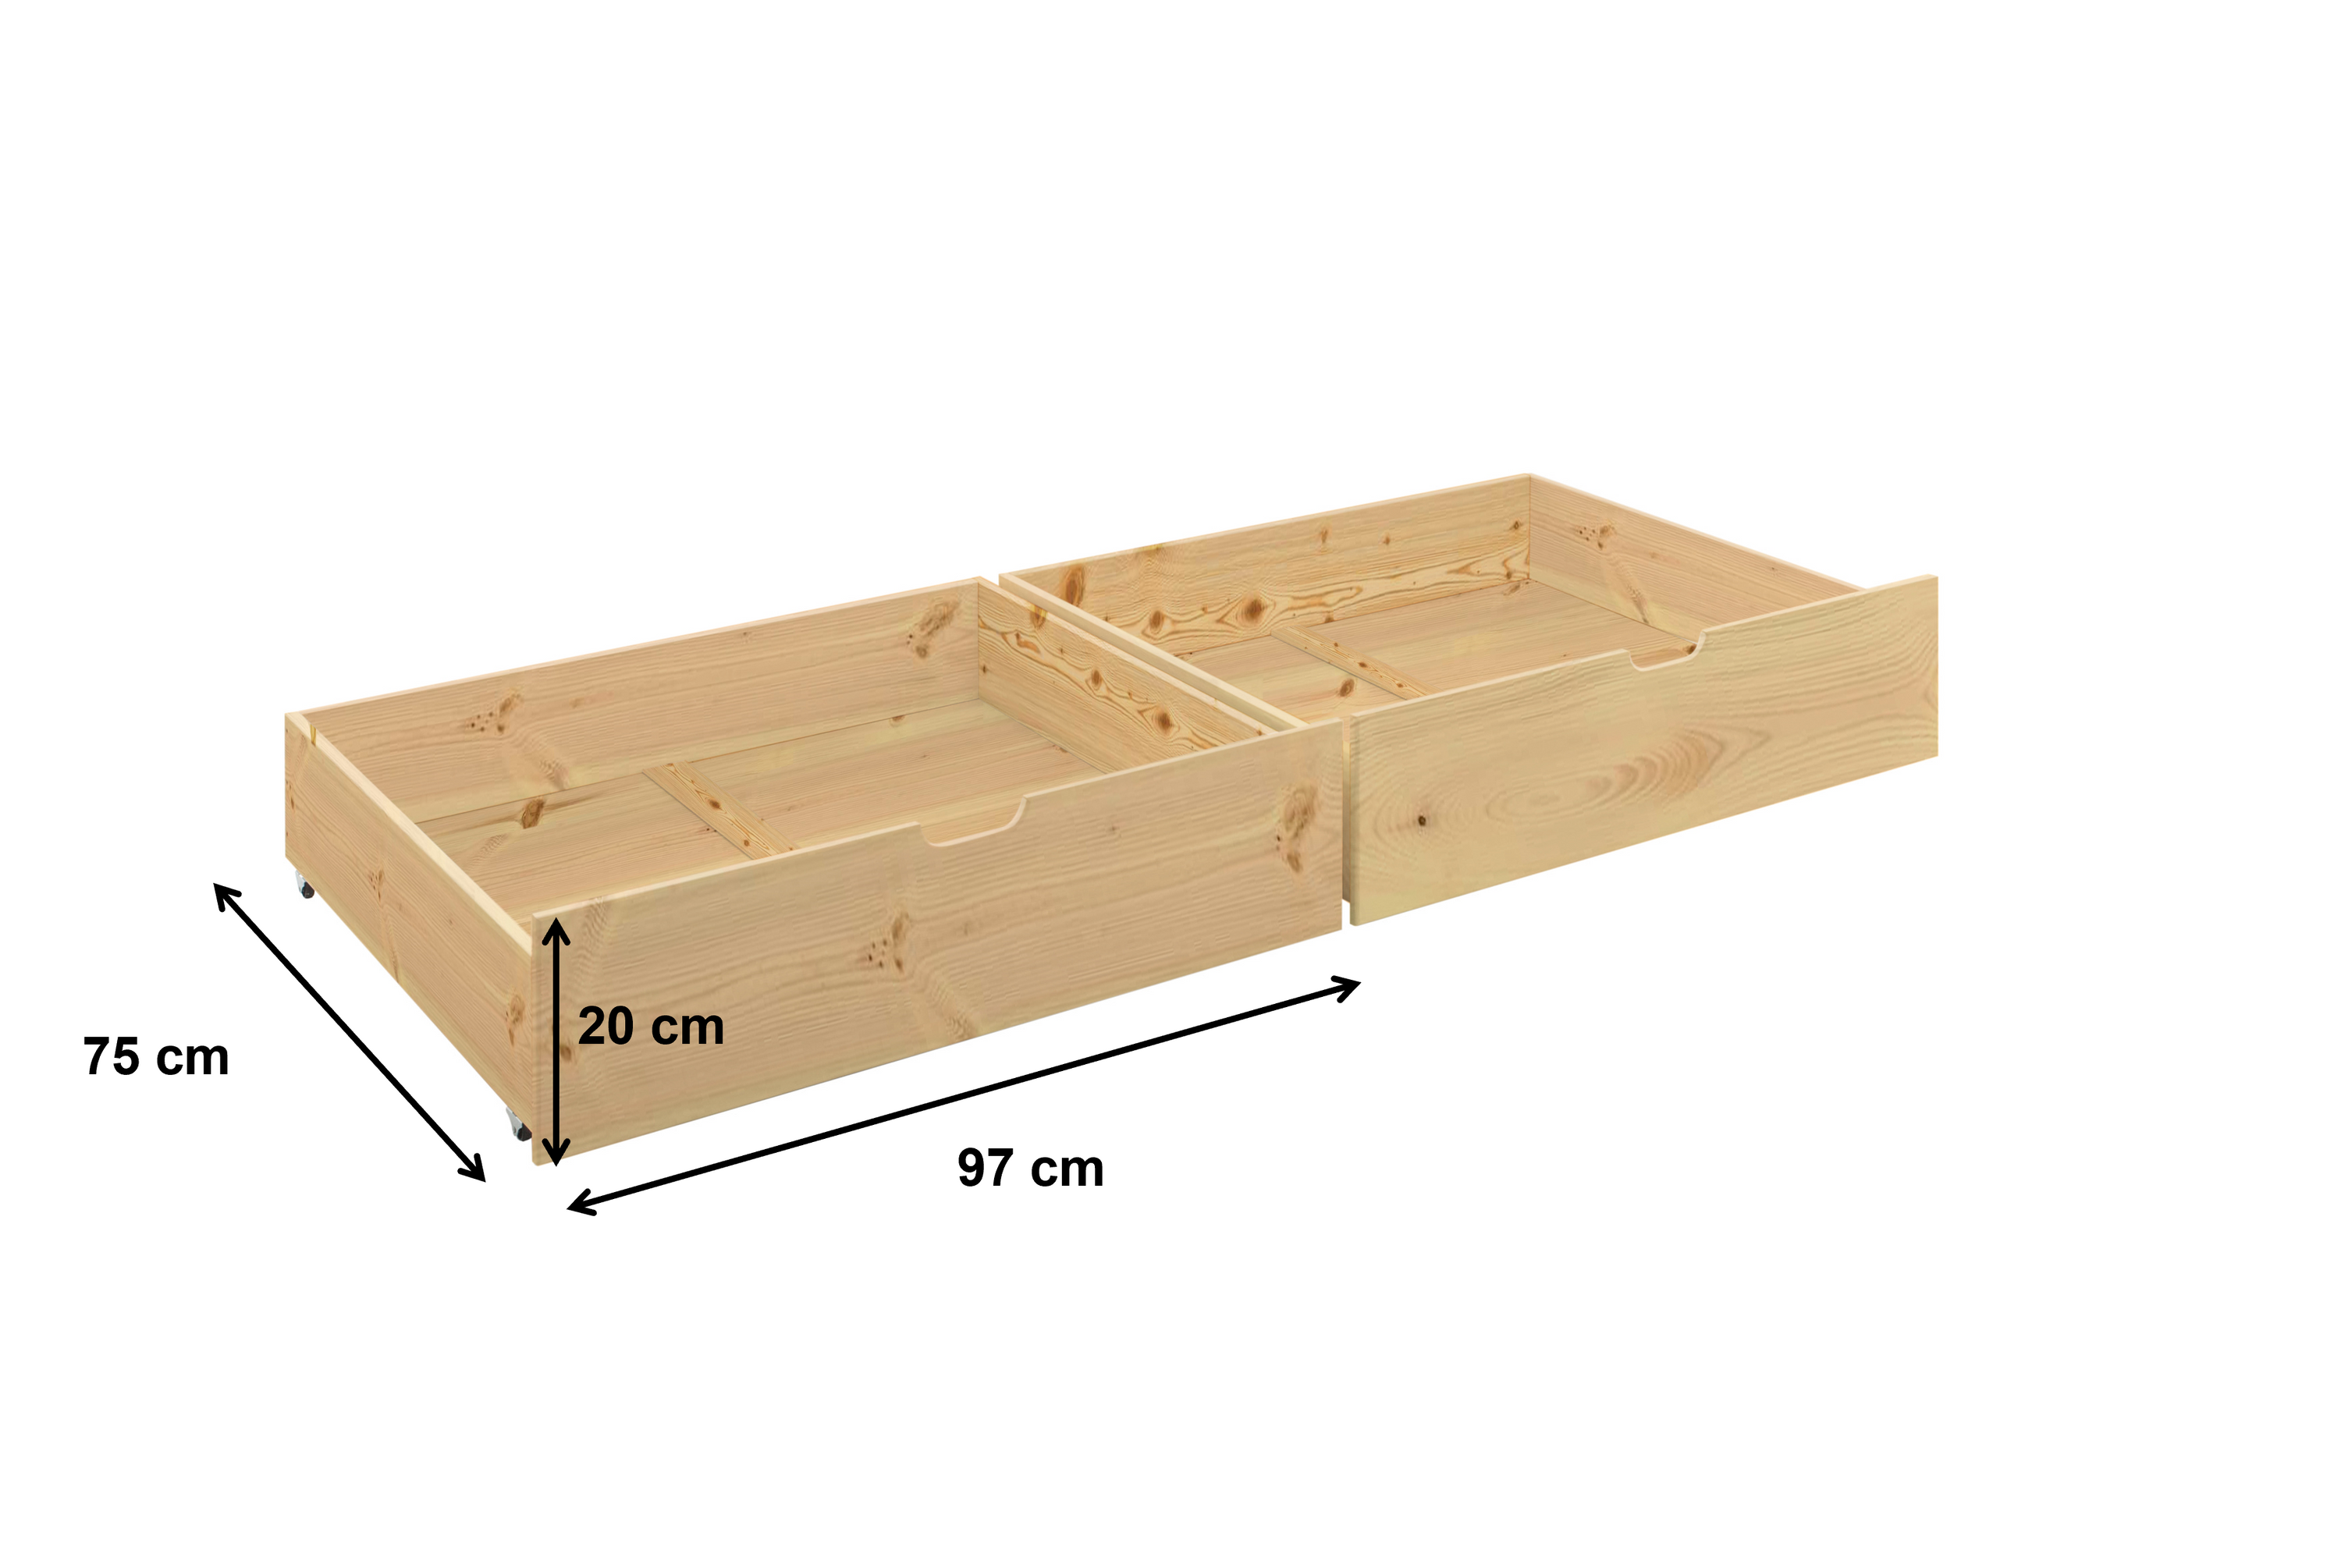 2x Bettkasten Alain mit Bodenplatten Kiefer massiv natur auf 4 Rollen B 97 - T 75 cm - H 20 cm